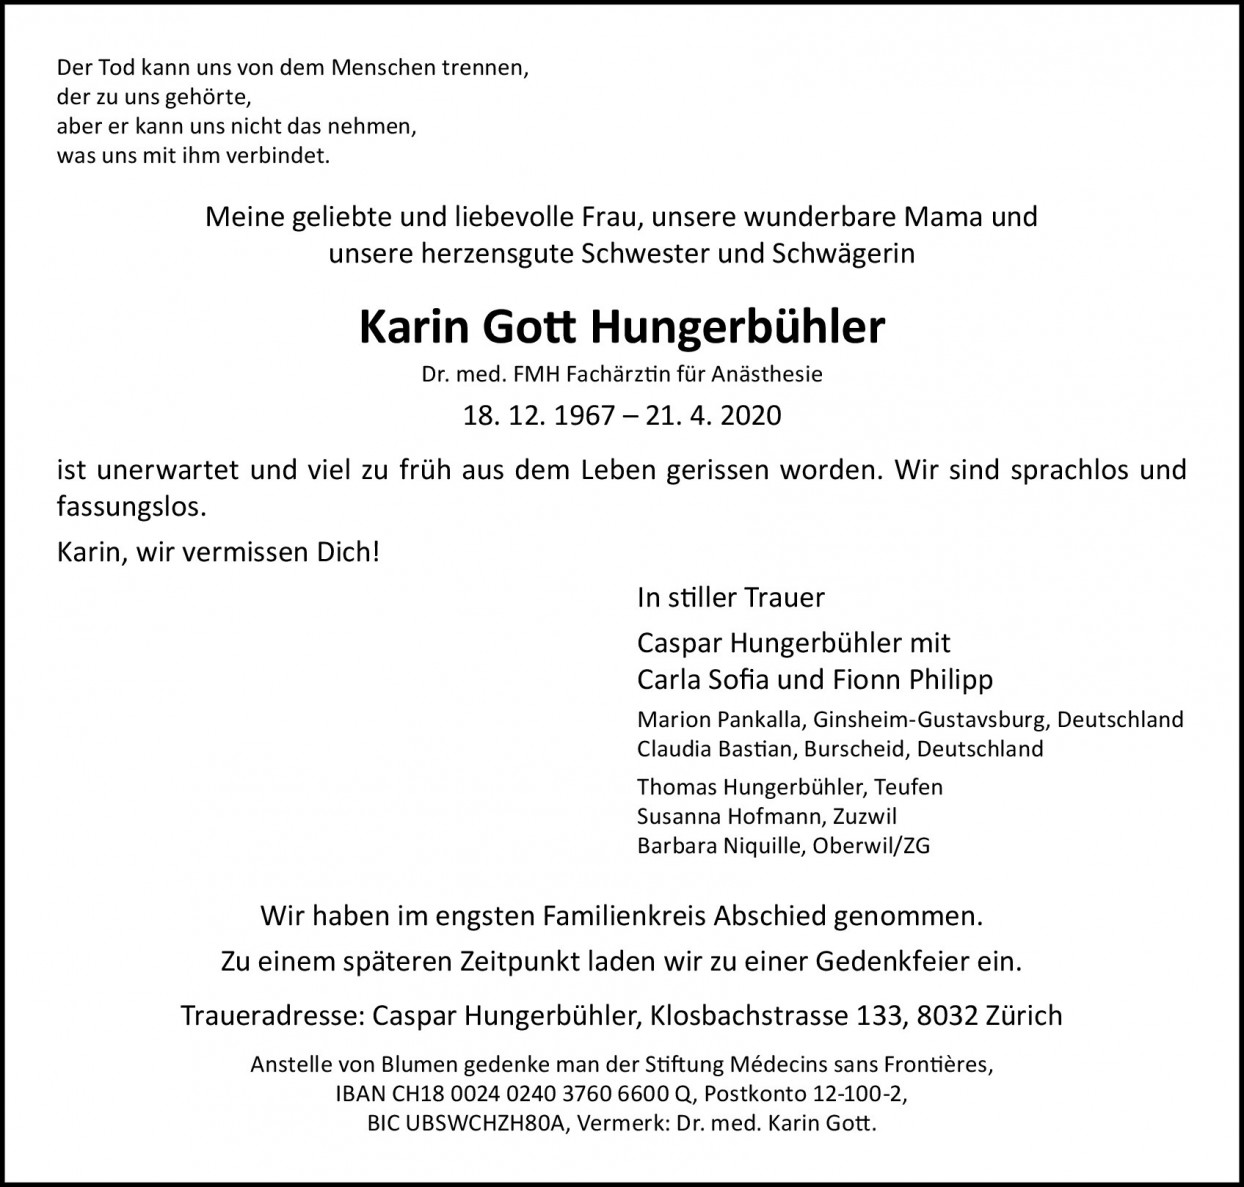 Karin Gott-Hungerbühler